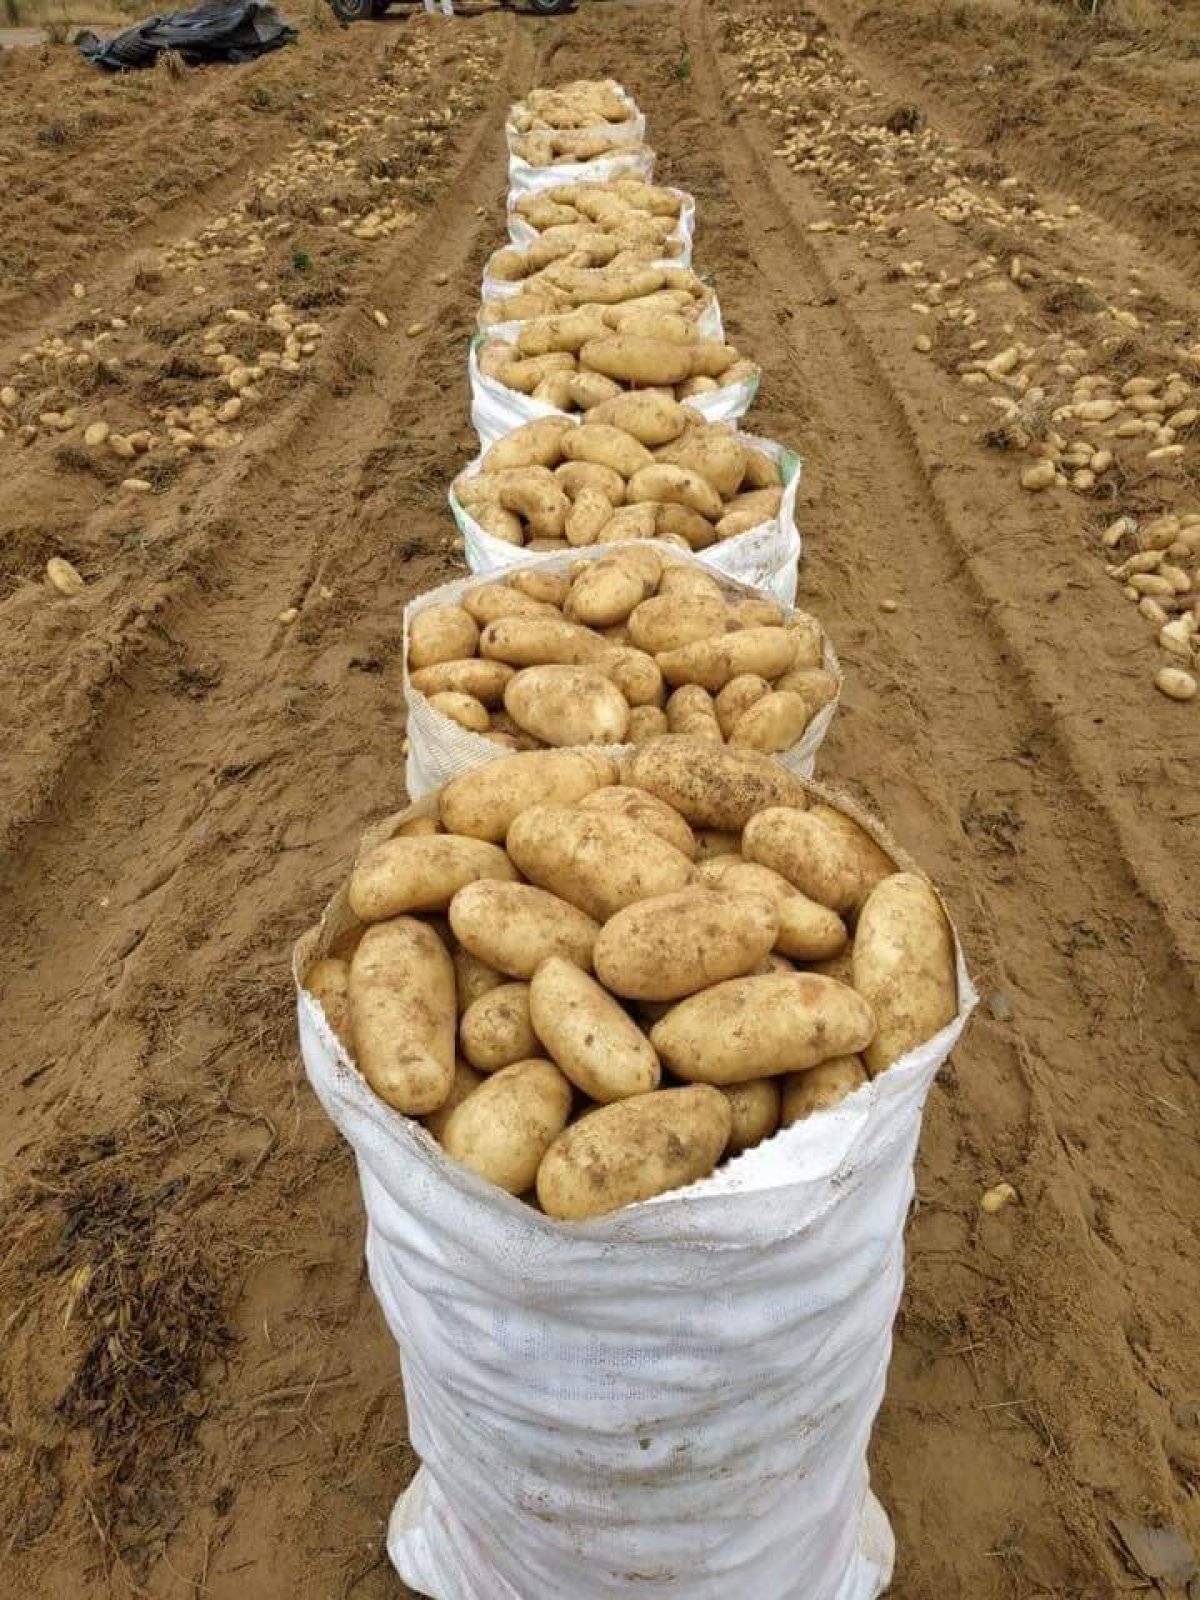 "الزراعة" توافق علي استيراد 160 ألف طن تقاوى بطاطس